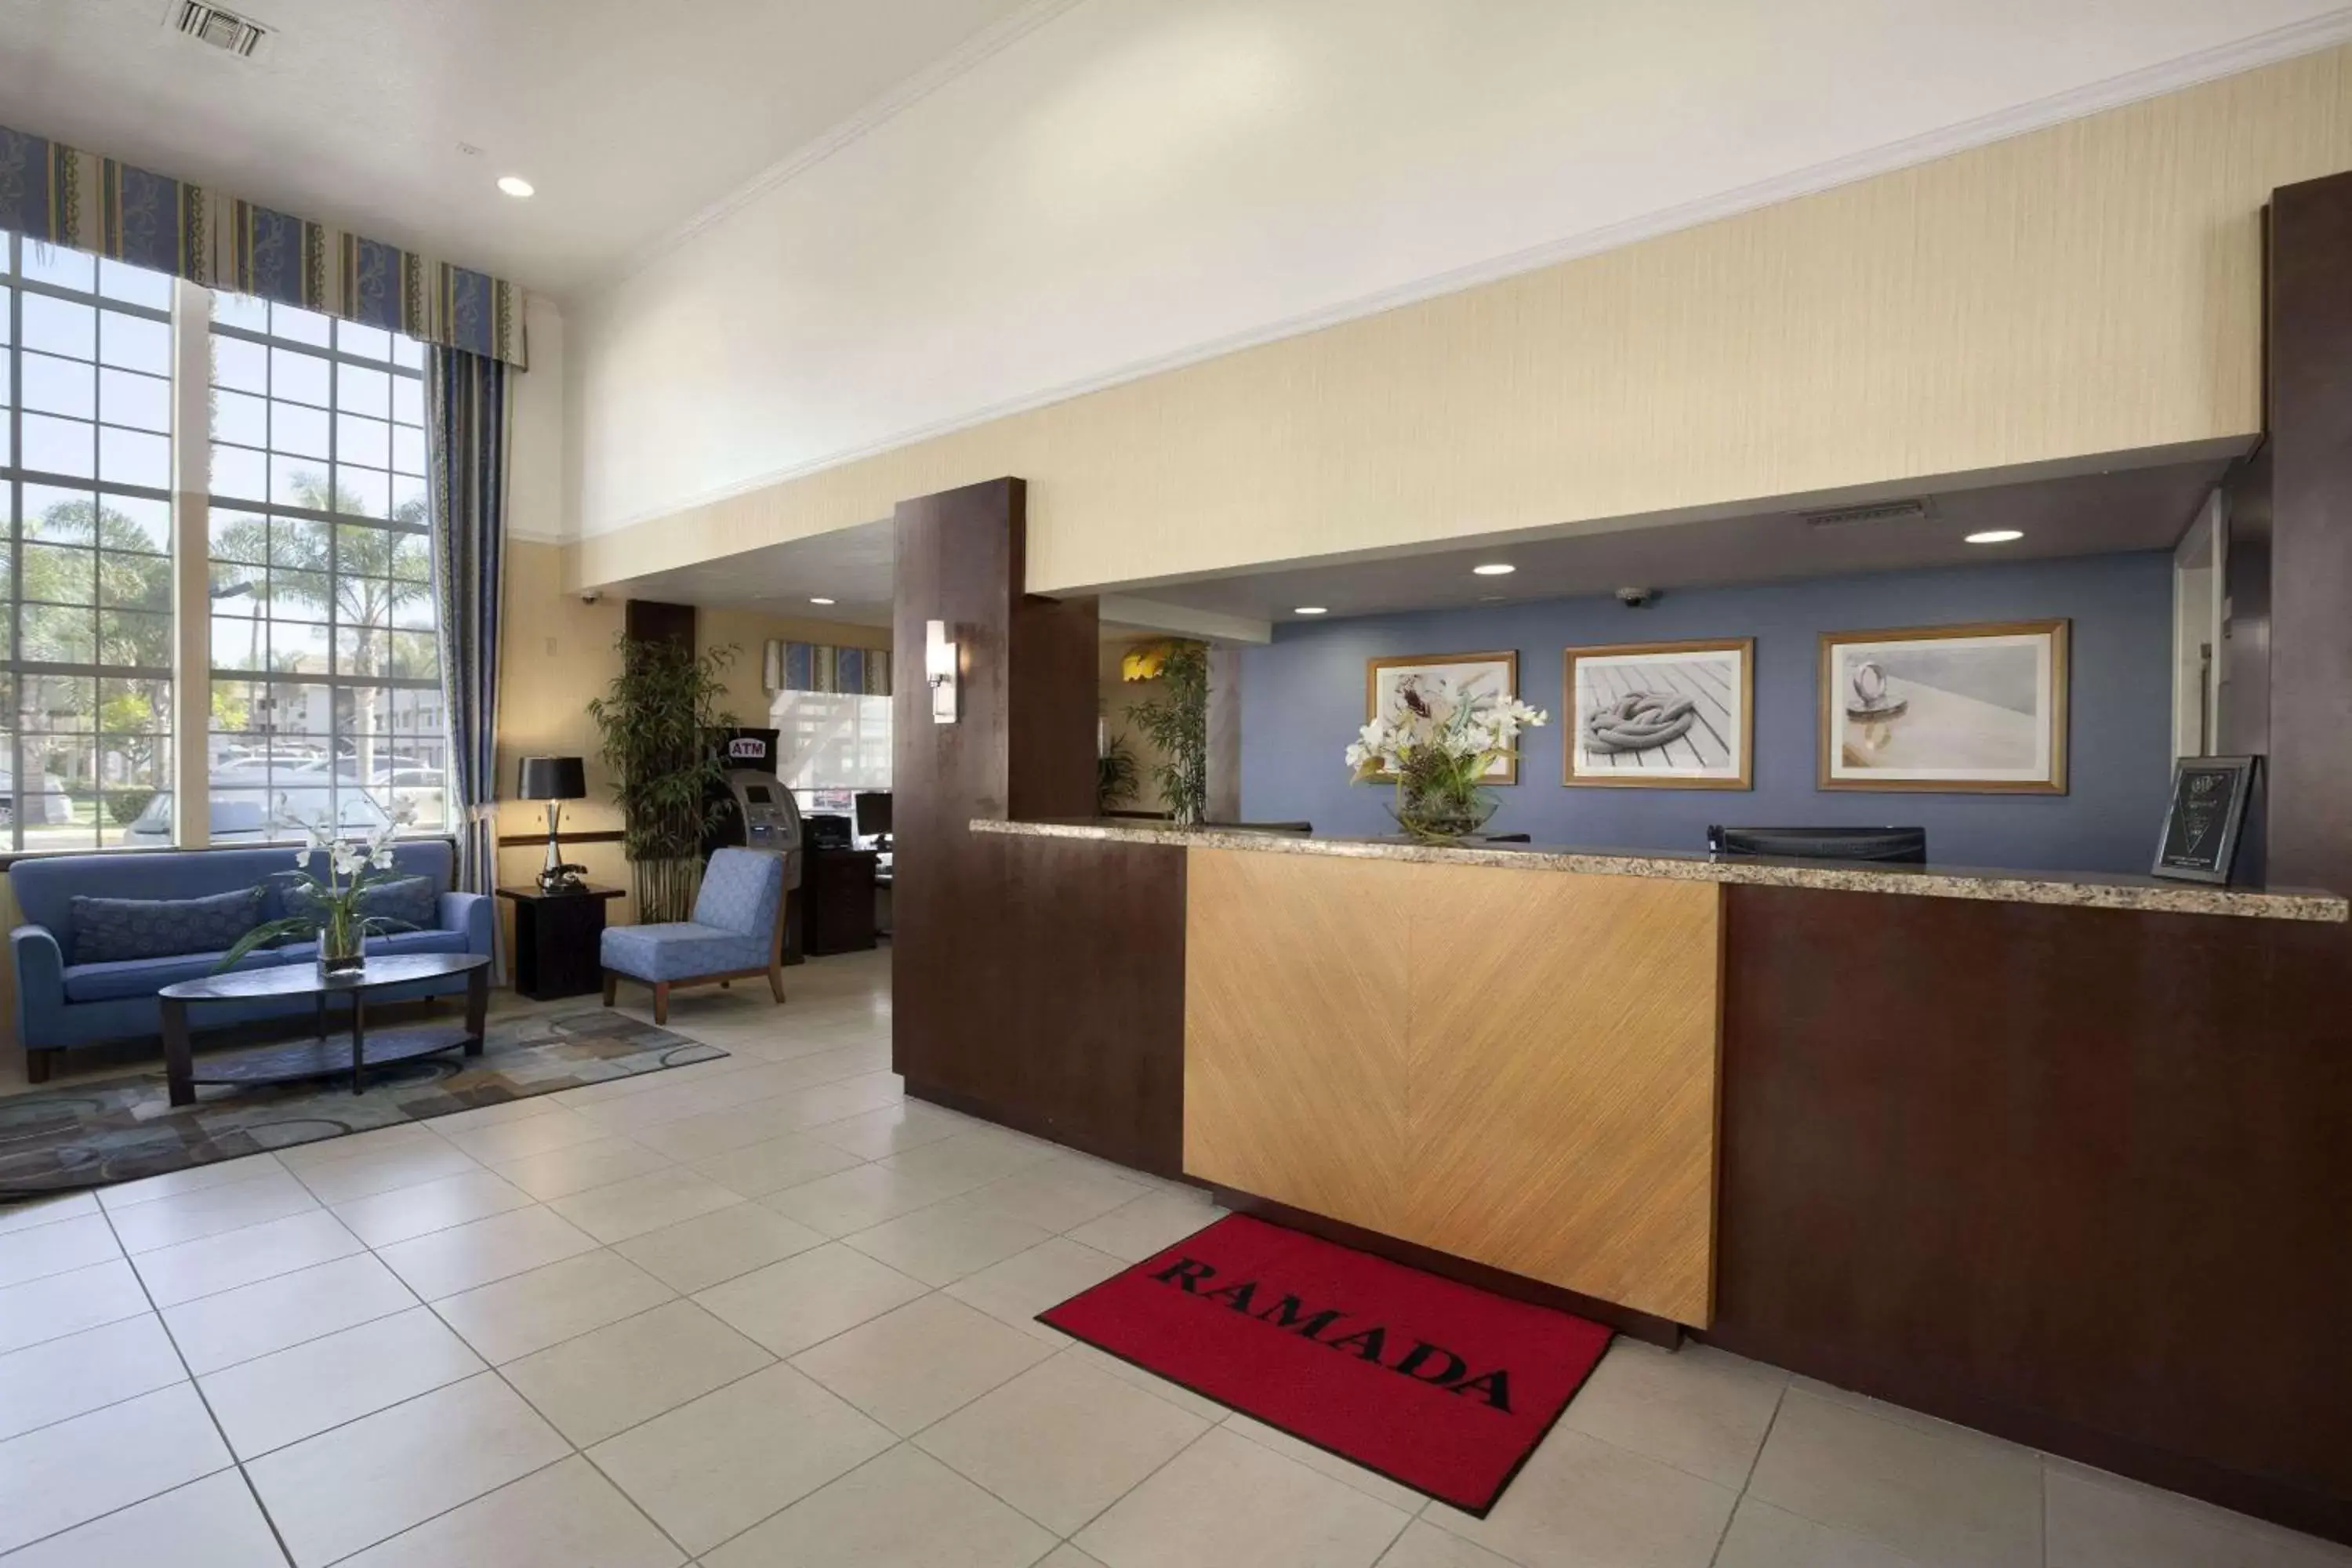 Lobby or reception, Lobby/Reception in Ramada by Wyndham Costa Mesa/Newport Beach